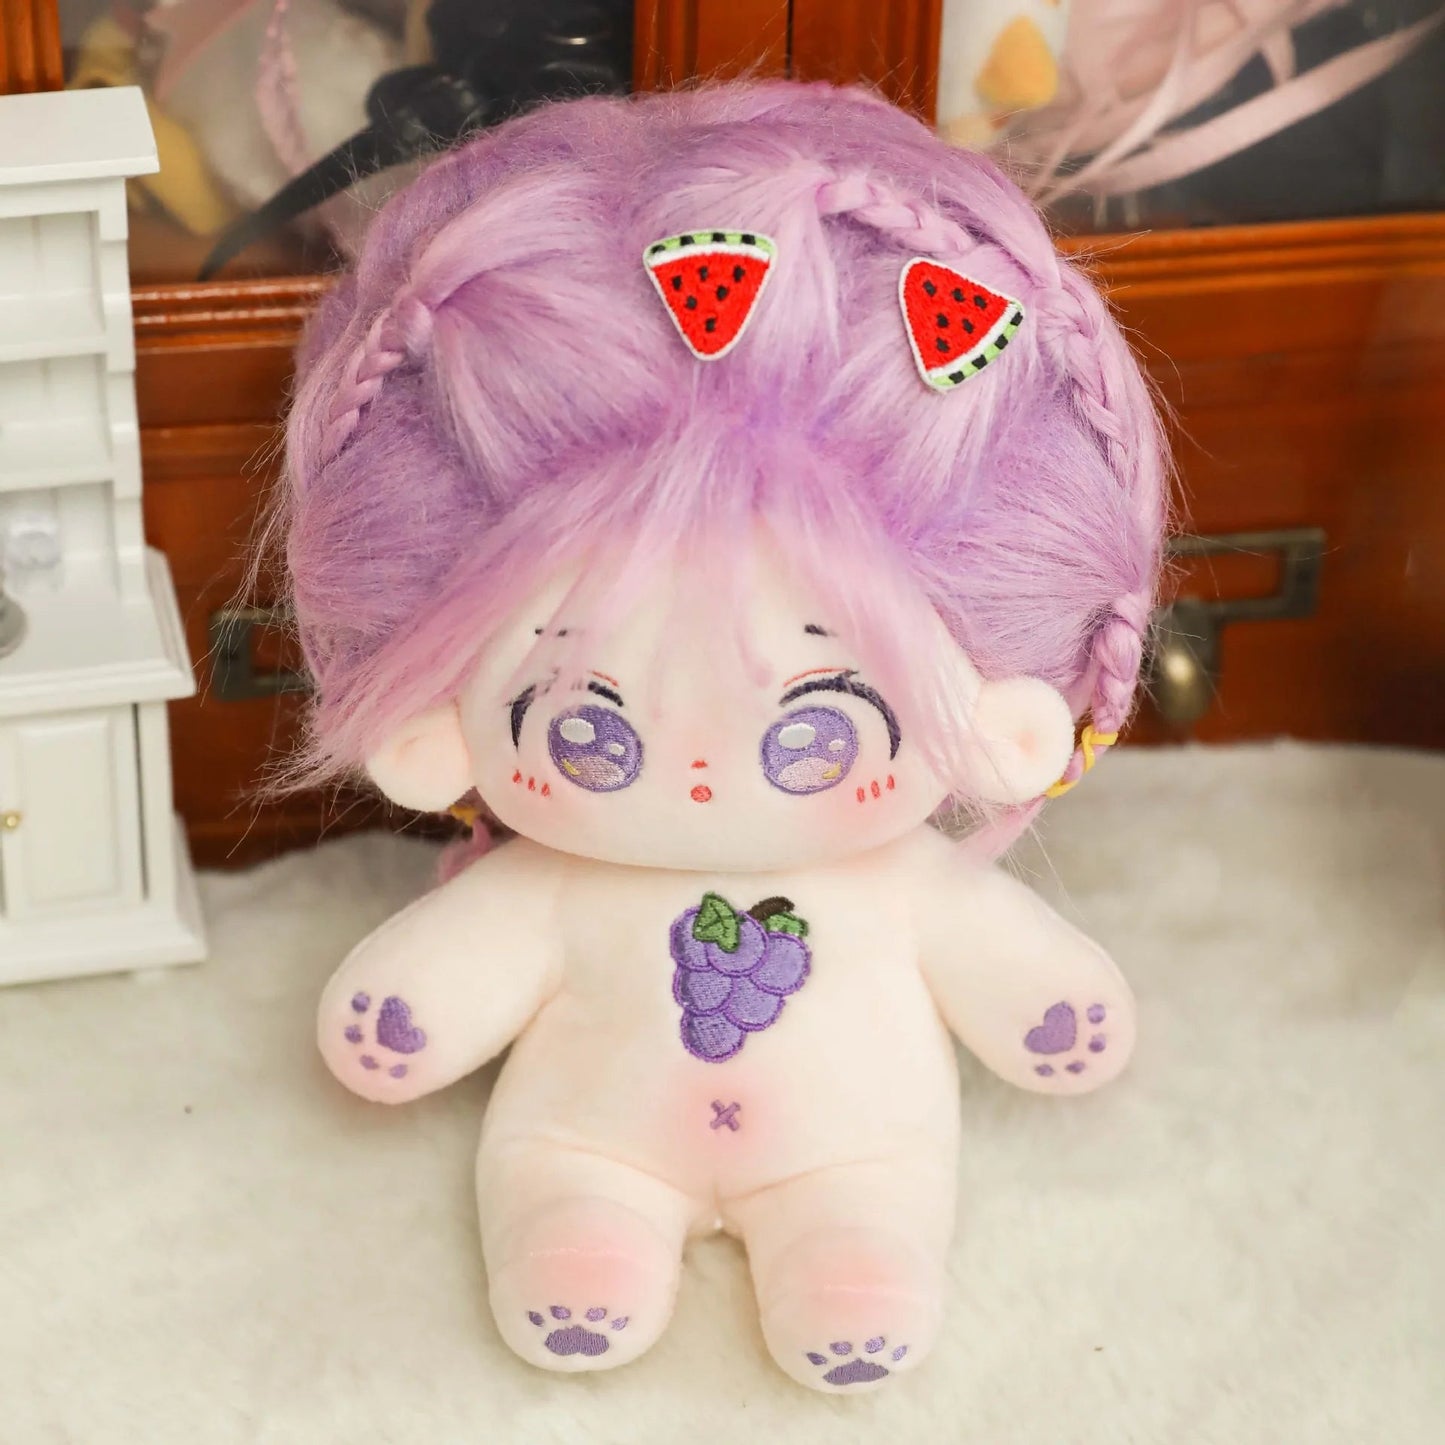 Kawaii Plush Idol Super Star Doll - 20cm Stuffed Cotton Figure